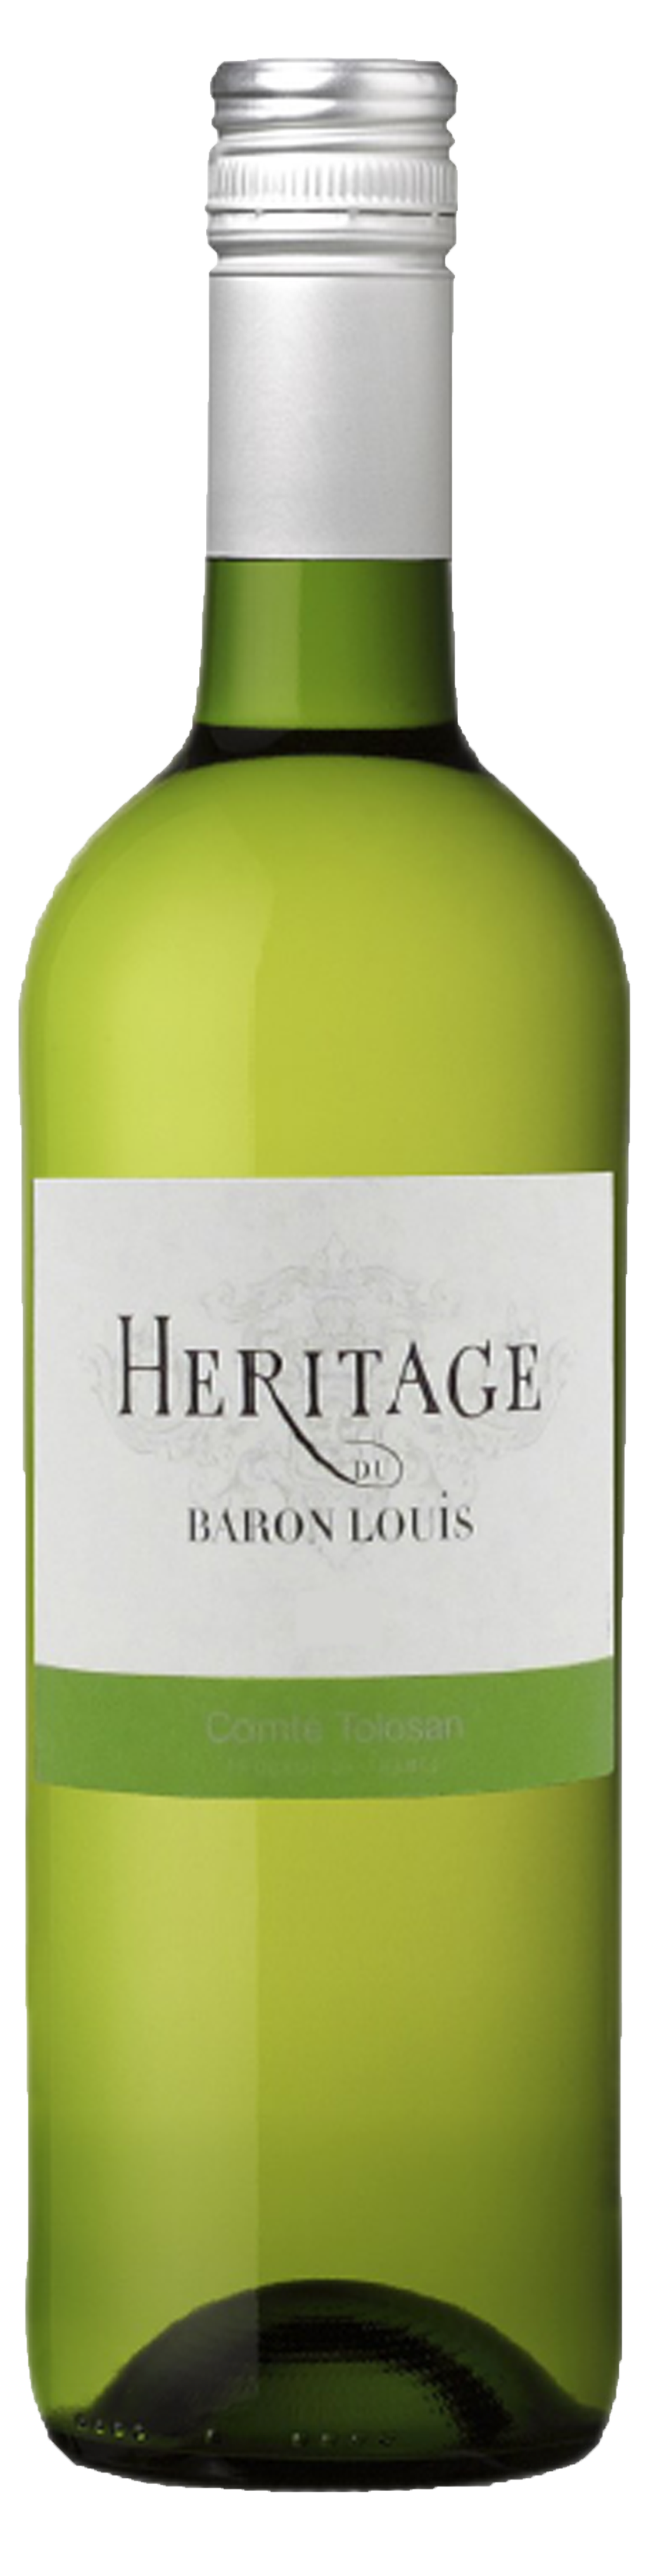 Bottle shot of 2013 Héritage de Baron Louis Blanc